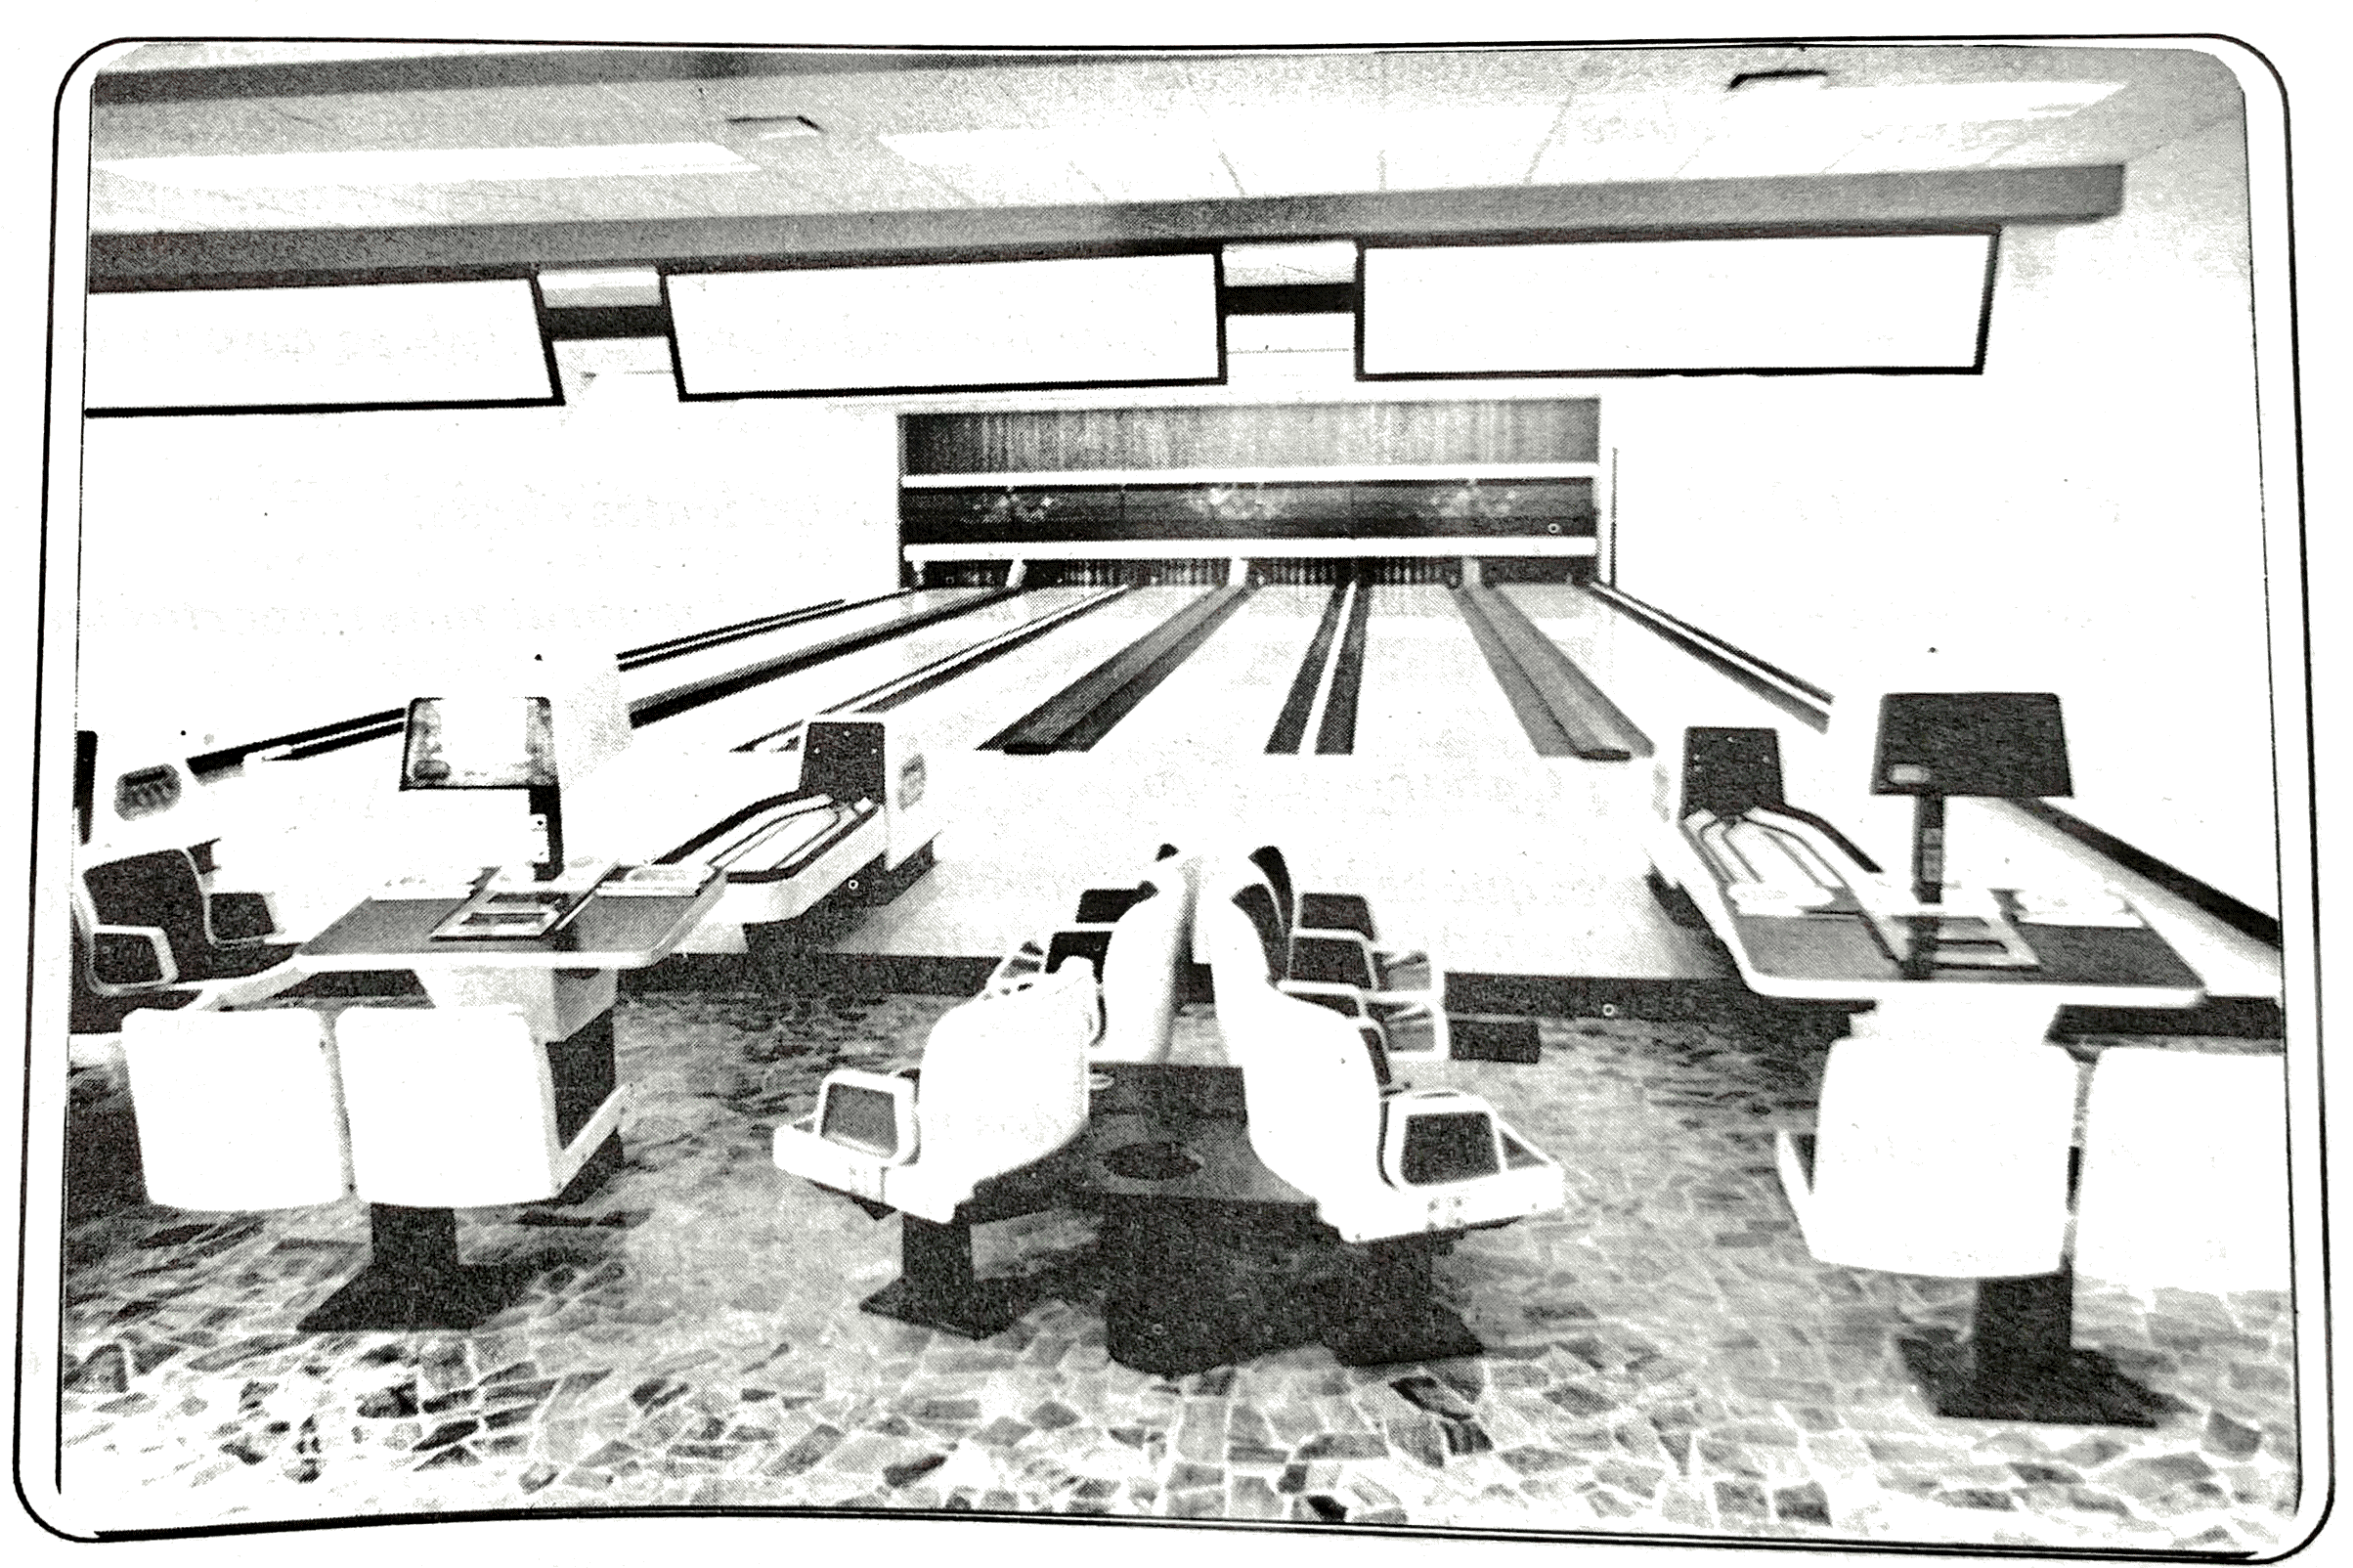 Implementación de BowlingImplementada como parte de la expansión deportiva que el Club tuvo a otros deportes, incentivando la diversidad deportiva entre sus miembros integrantes.